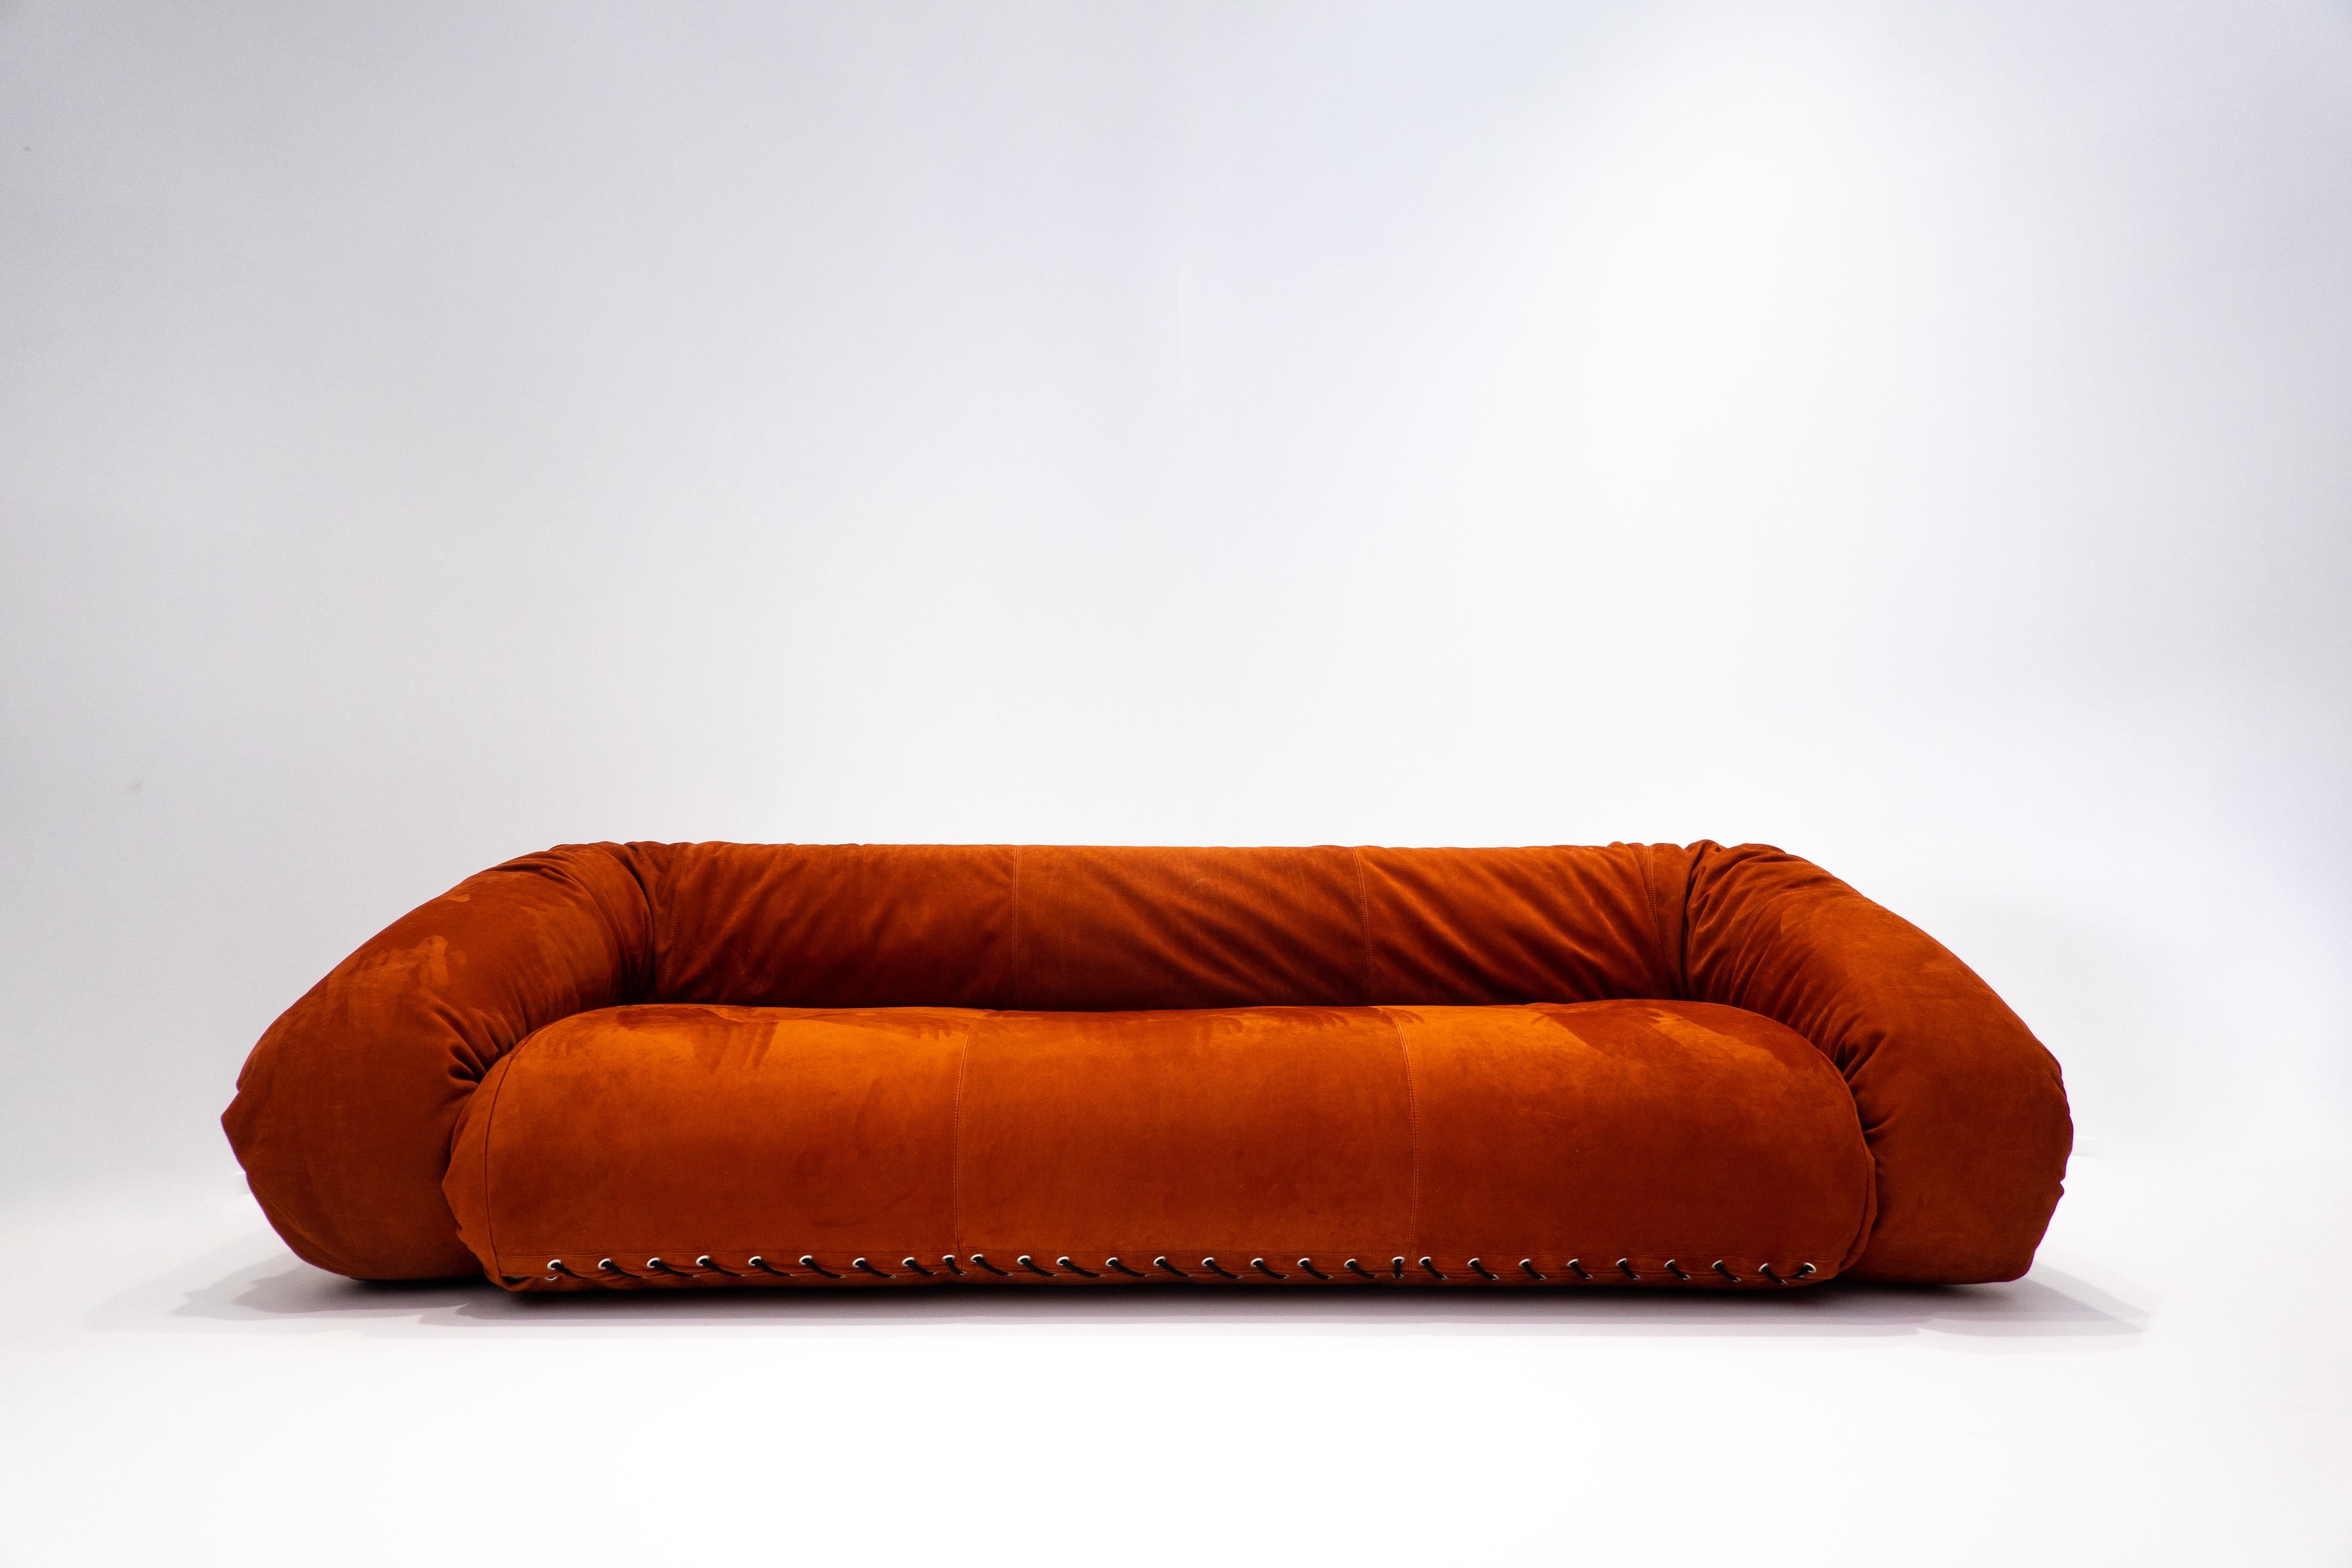 Late 20th Century Anfibio Sofa Bed by Alessandro Becchi for Giovannetti Collezioni, Orange, 1970s